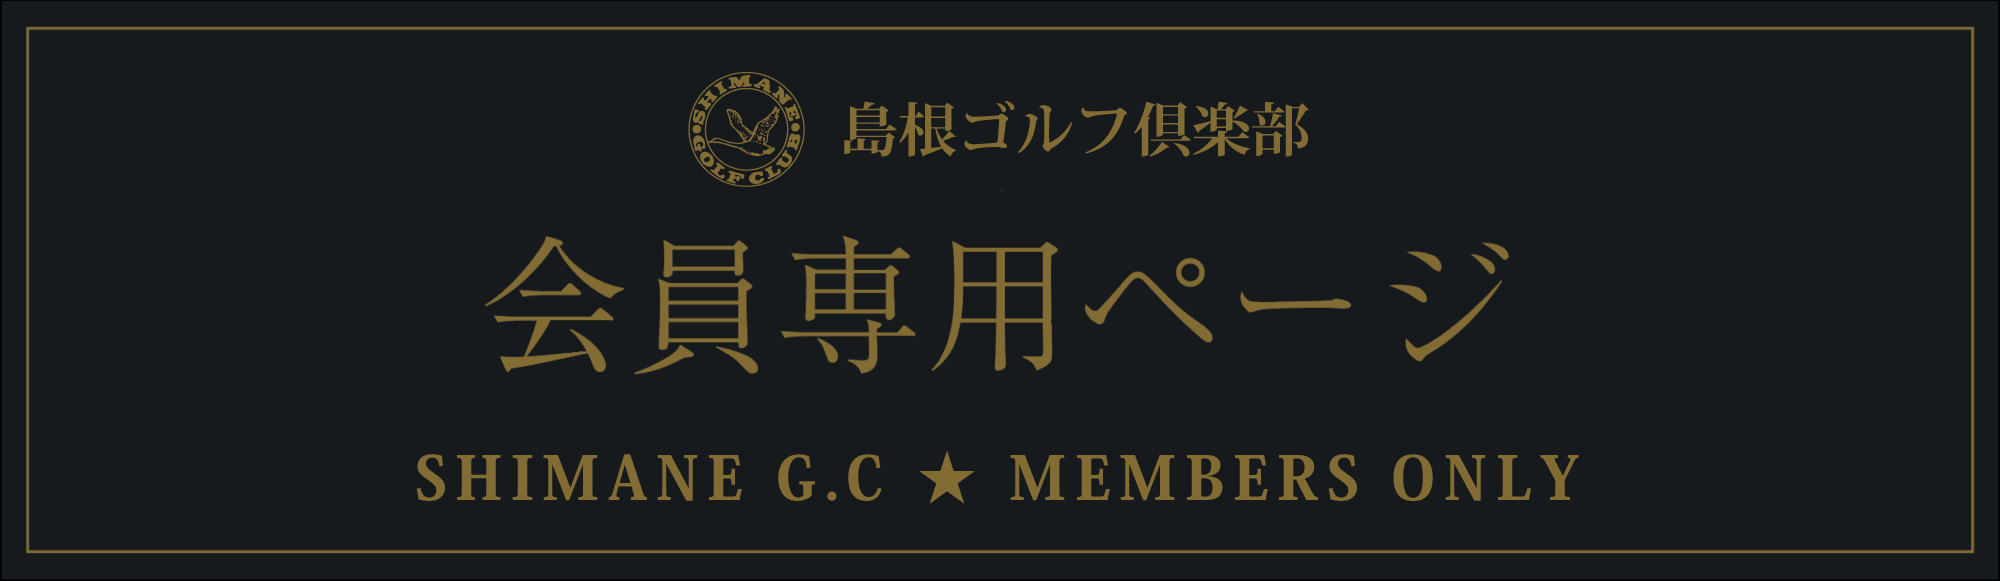 members_shimane